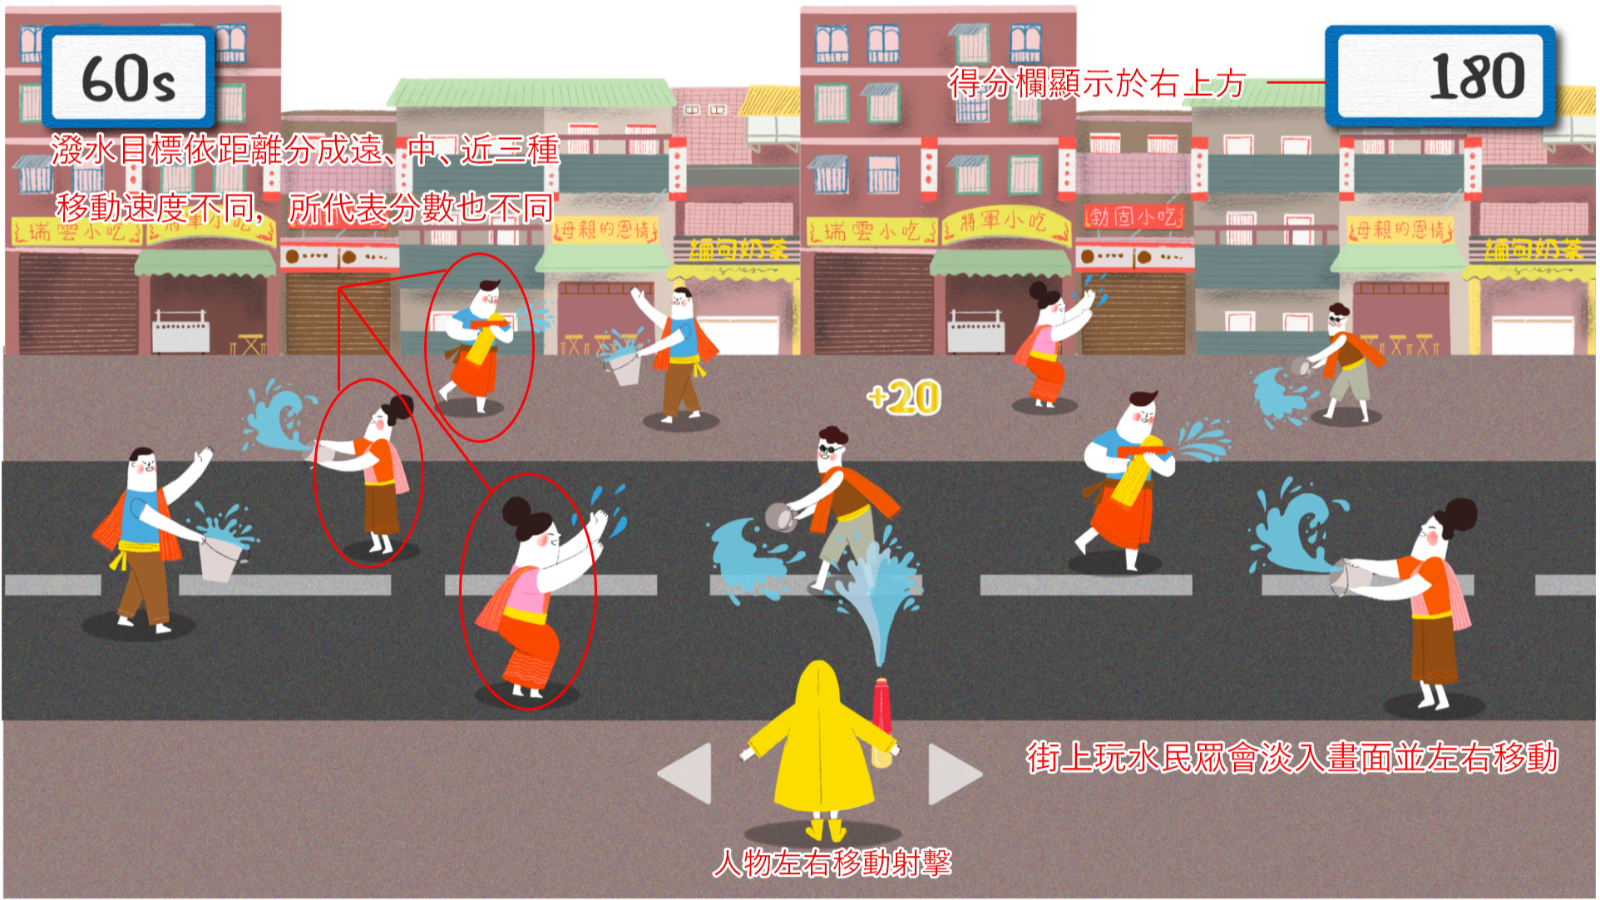 เกมสาดน้ำออนไลน์ที่จำลองฉากหลังเป็นถนนฮวาซิน ในเขตจงเห๋อของนครนิวไทเปที่มีการจัดงานเทศกาลสงกรานต์ทุกปี (ภาพจาก สำนักวัฒนธรรมนครนิวไทเป)